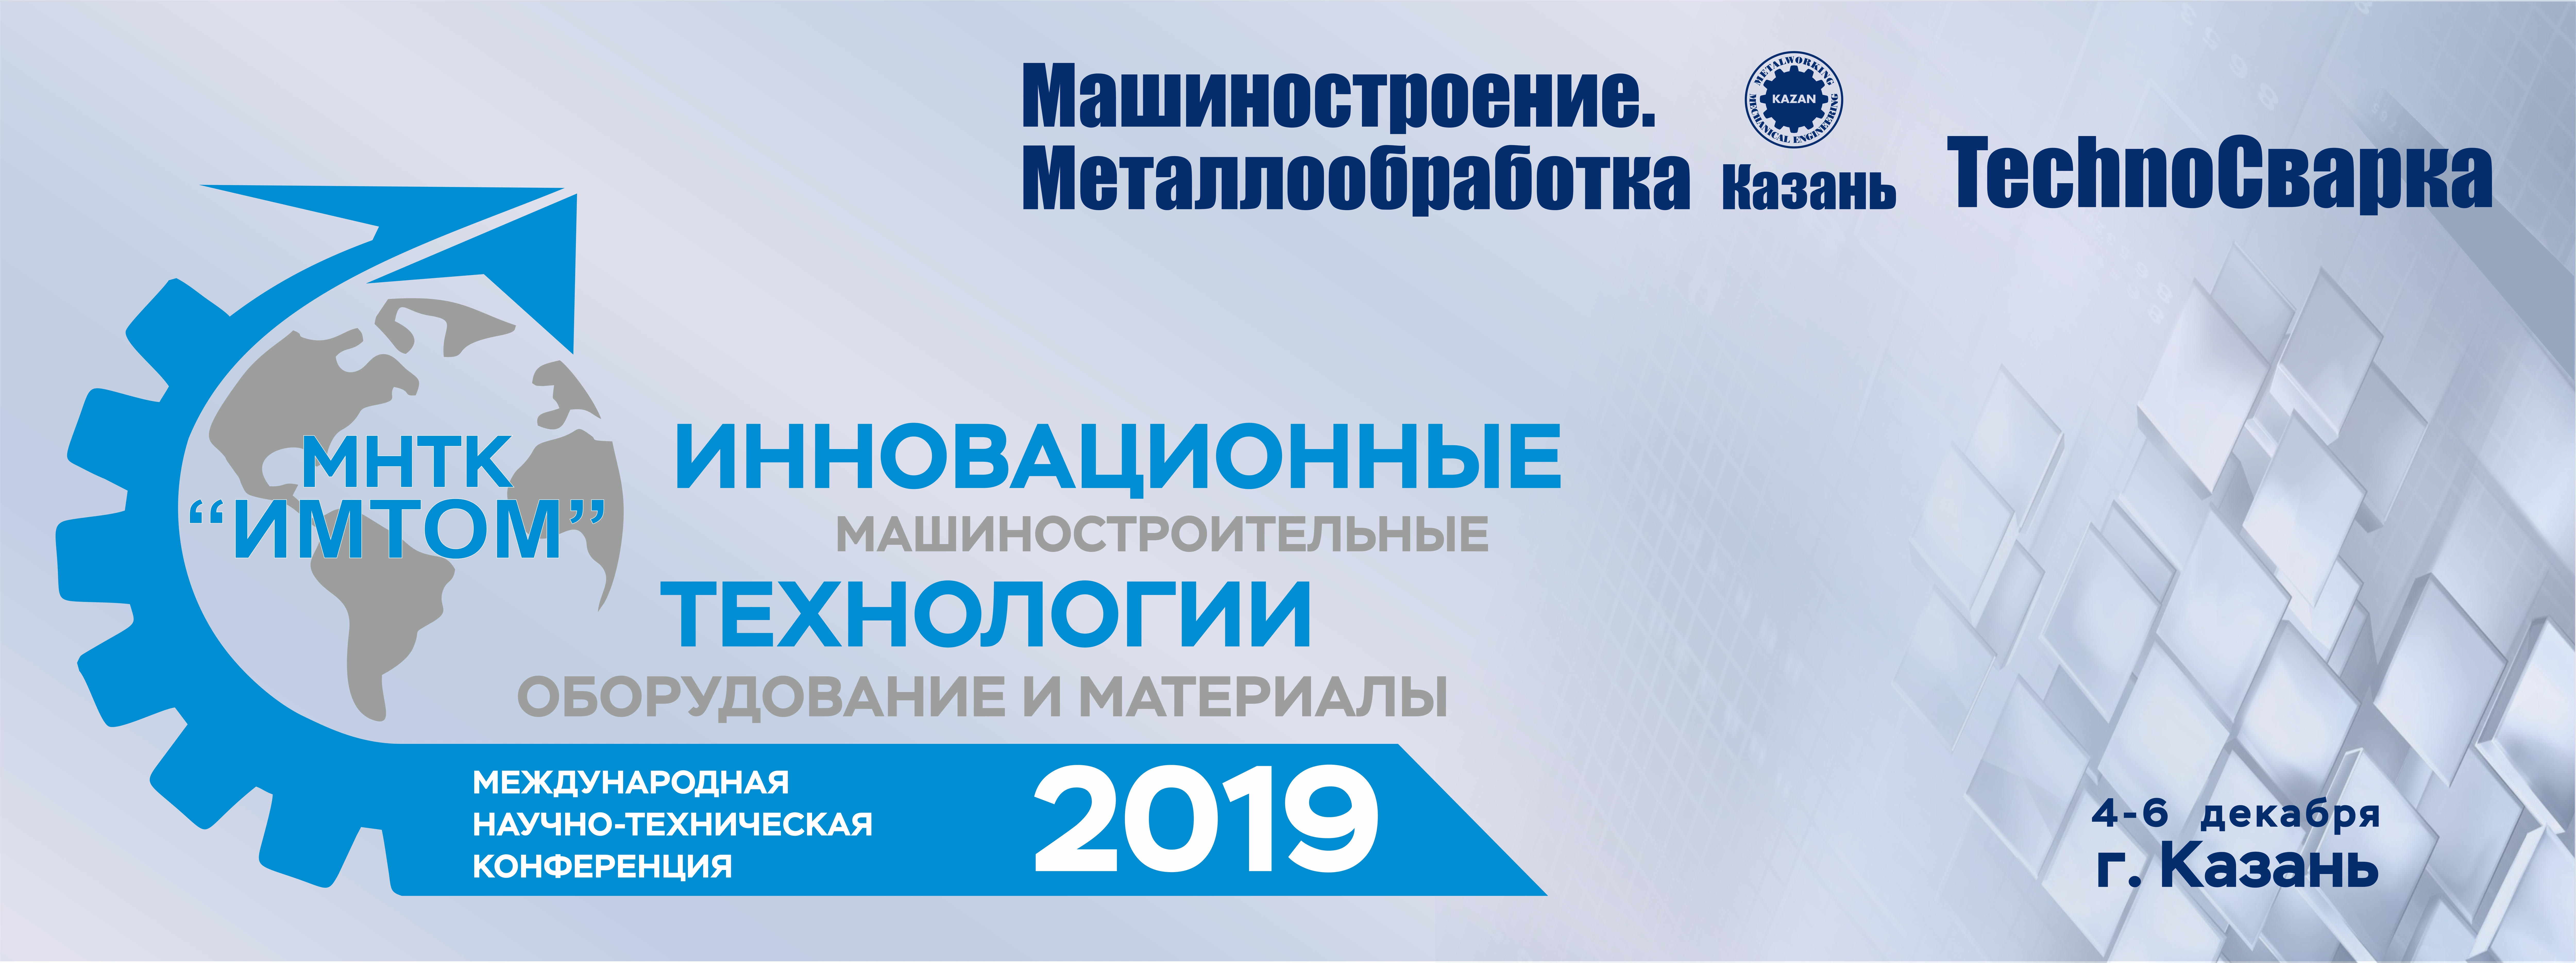 Информация для участников конференции МНТК "ИМТОМ-2019"